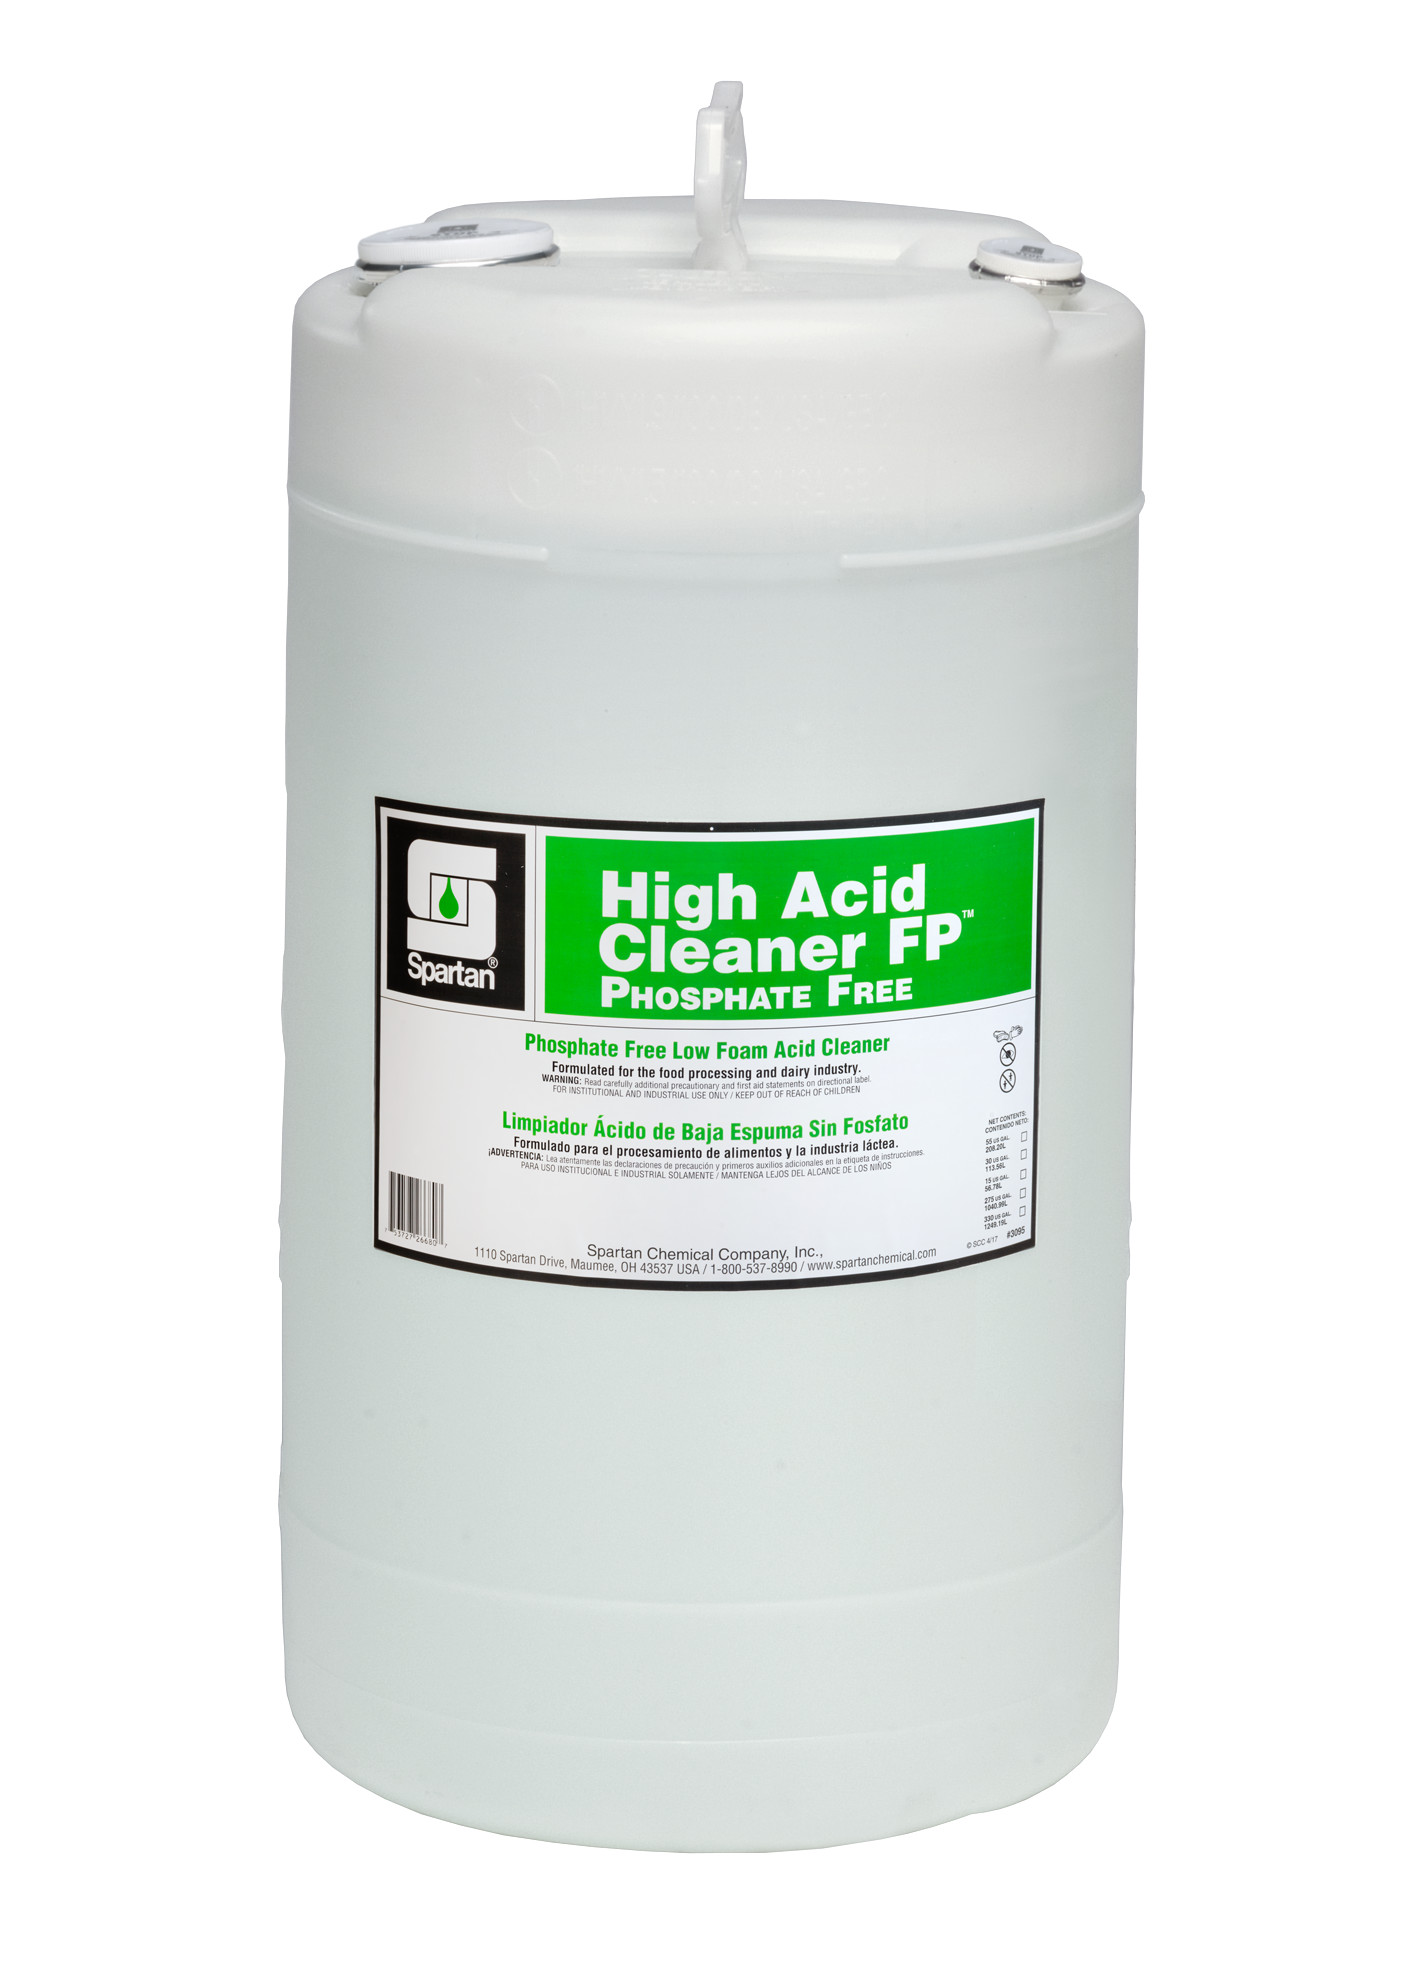 Spartan Chemical Company High Acid Cleaner FP Phosphate Free, 15 GAL DRUM